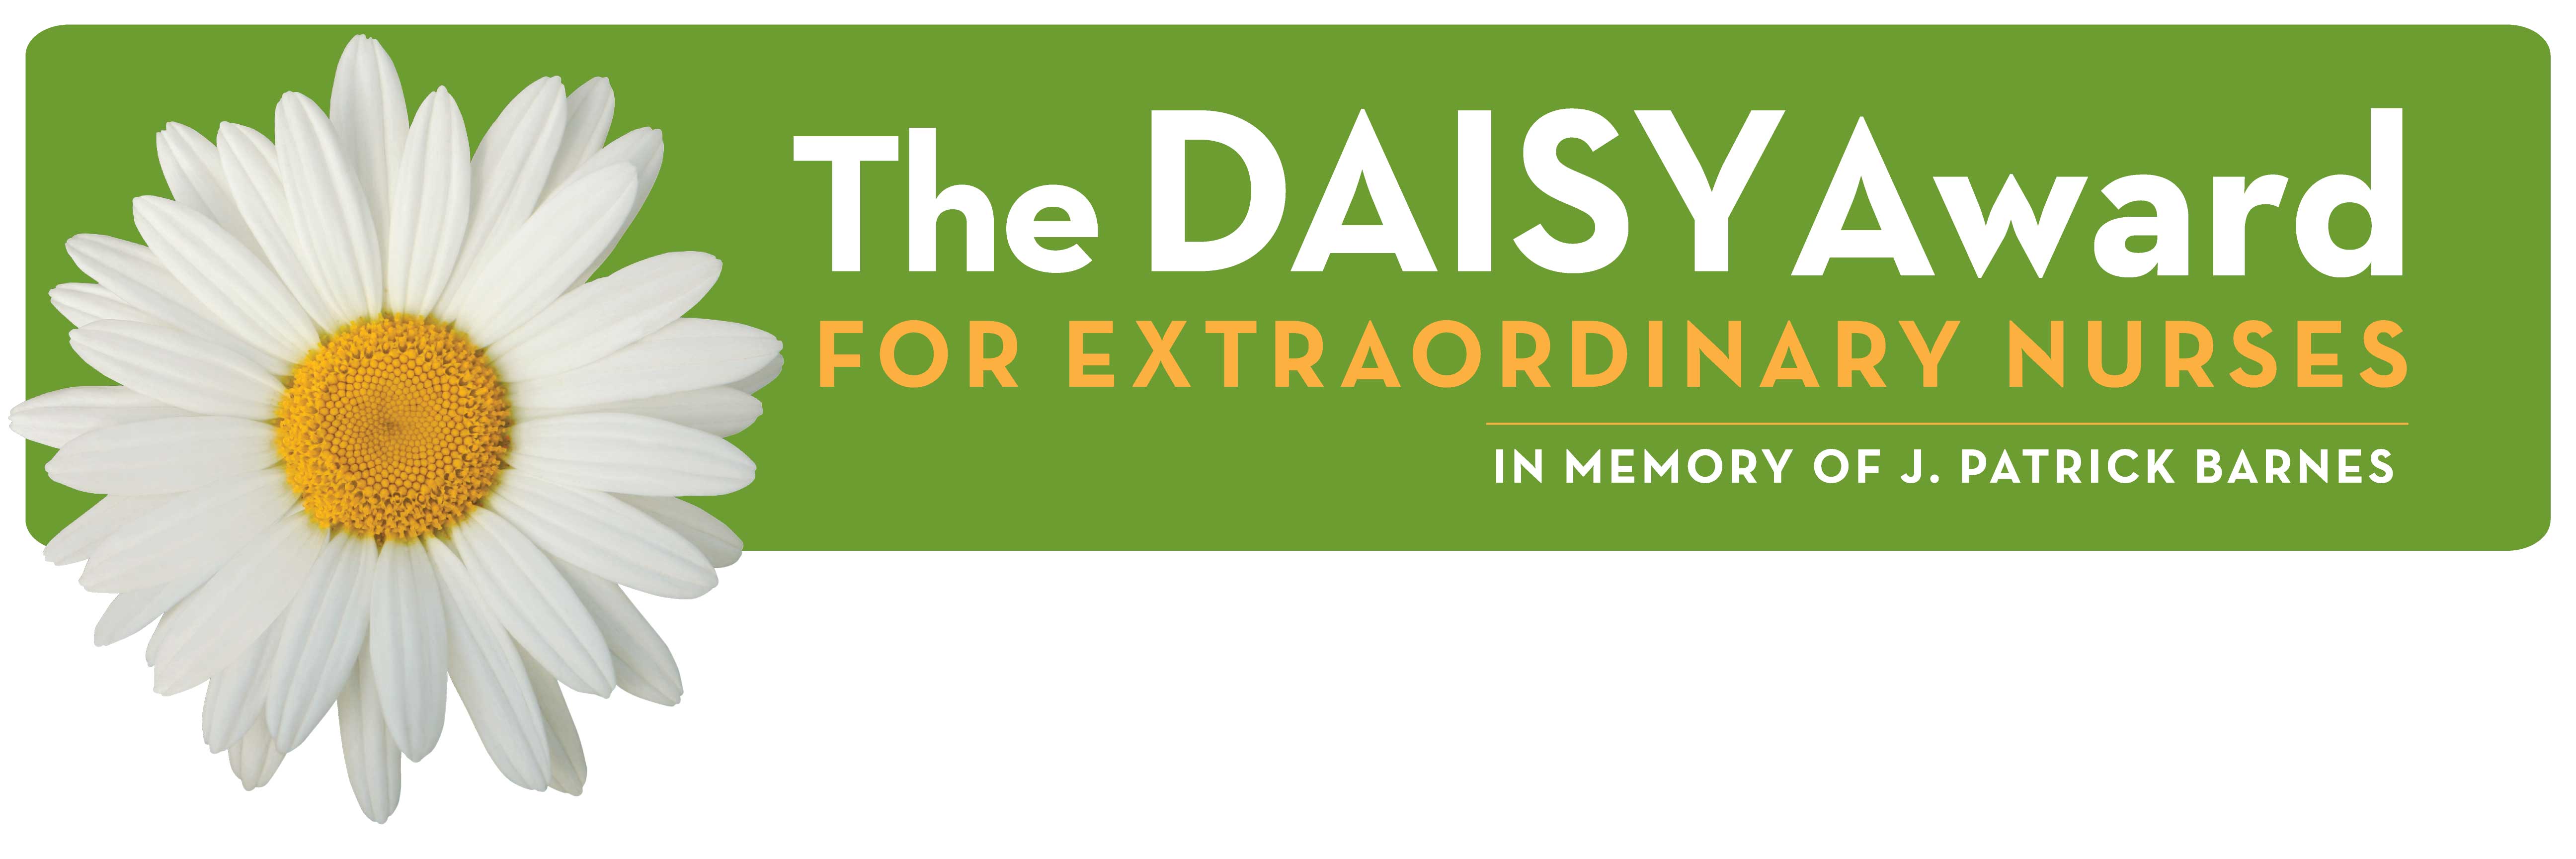 DAISY Award Nomination Form Midland Health